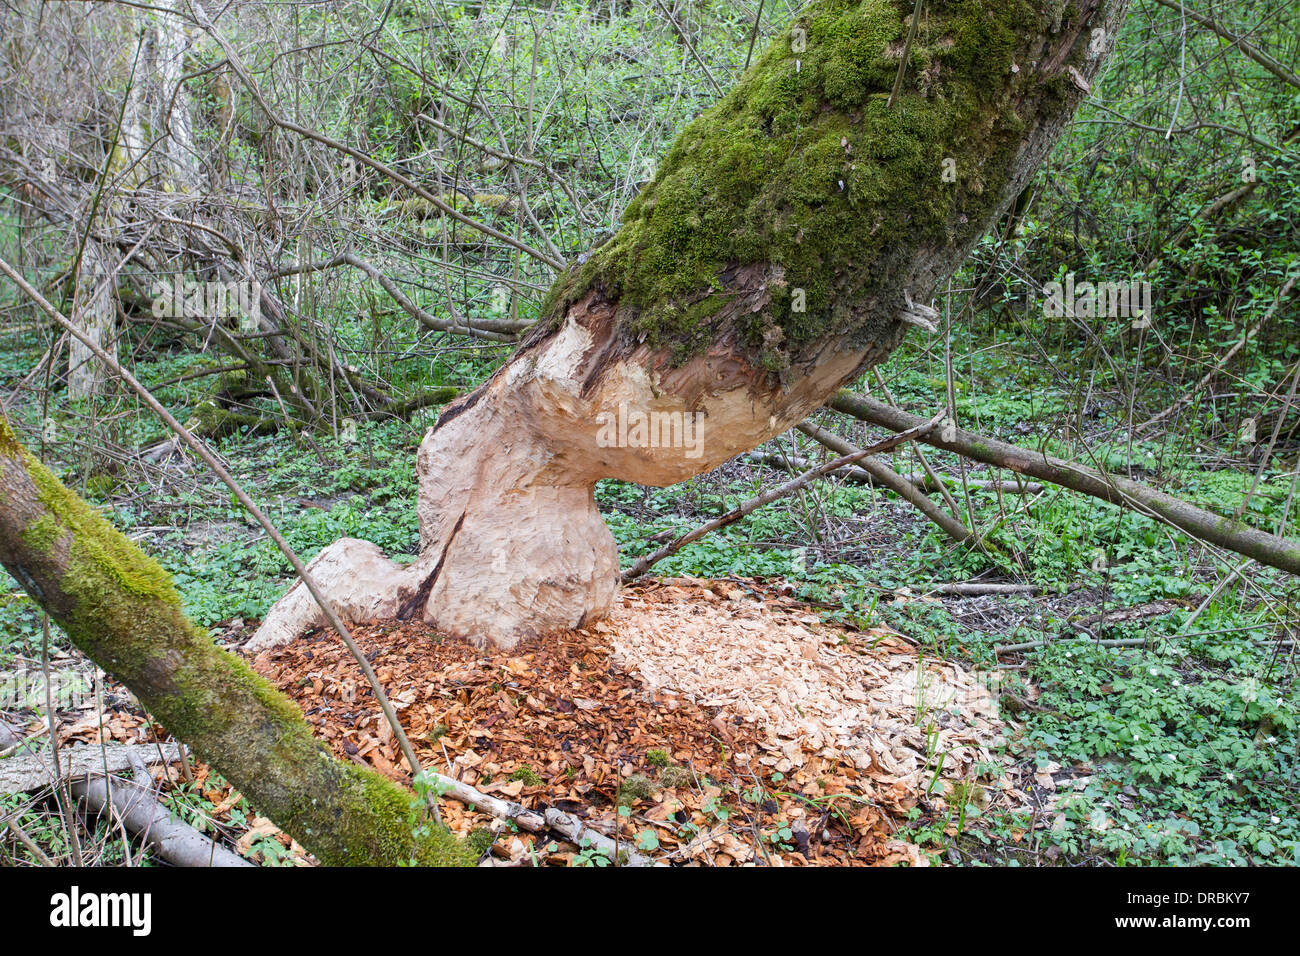 Les Castors Castor copeaux de bois d'arbres feuillus biberbaum Banque D'Images